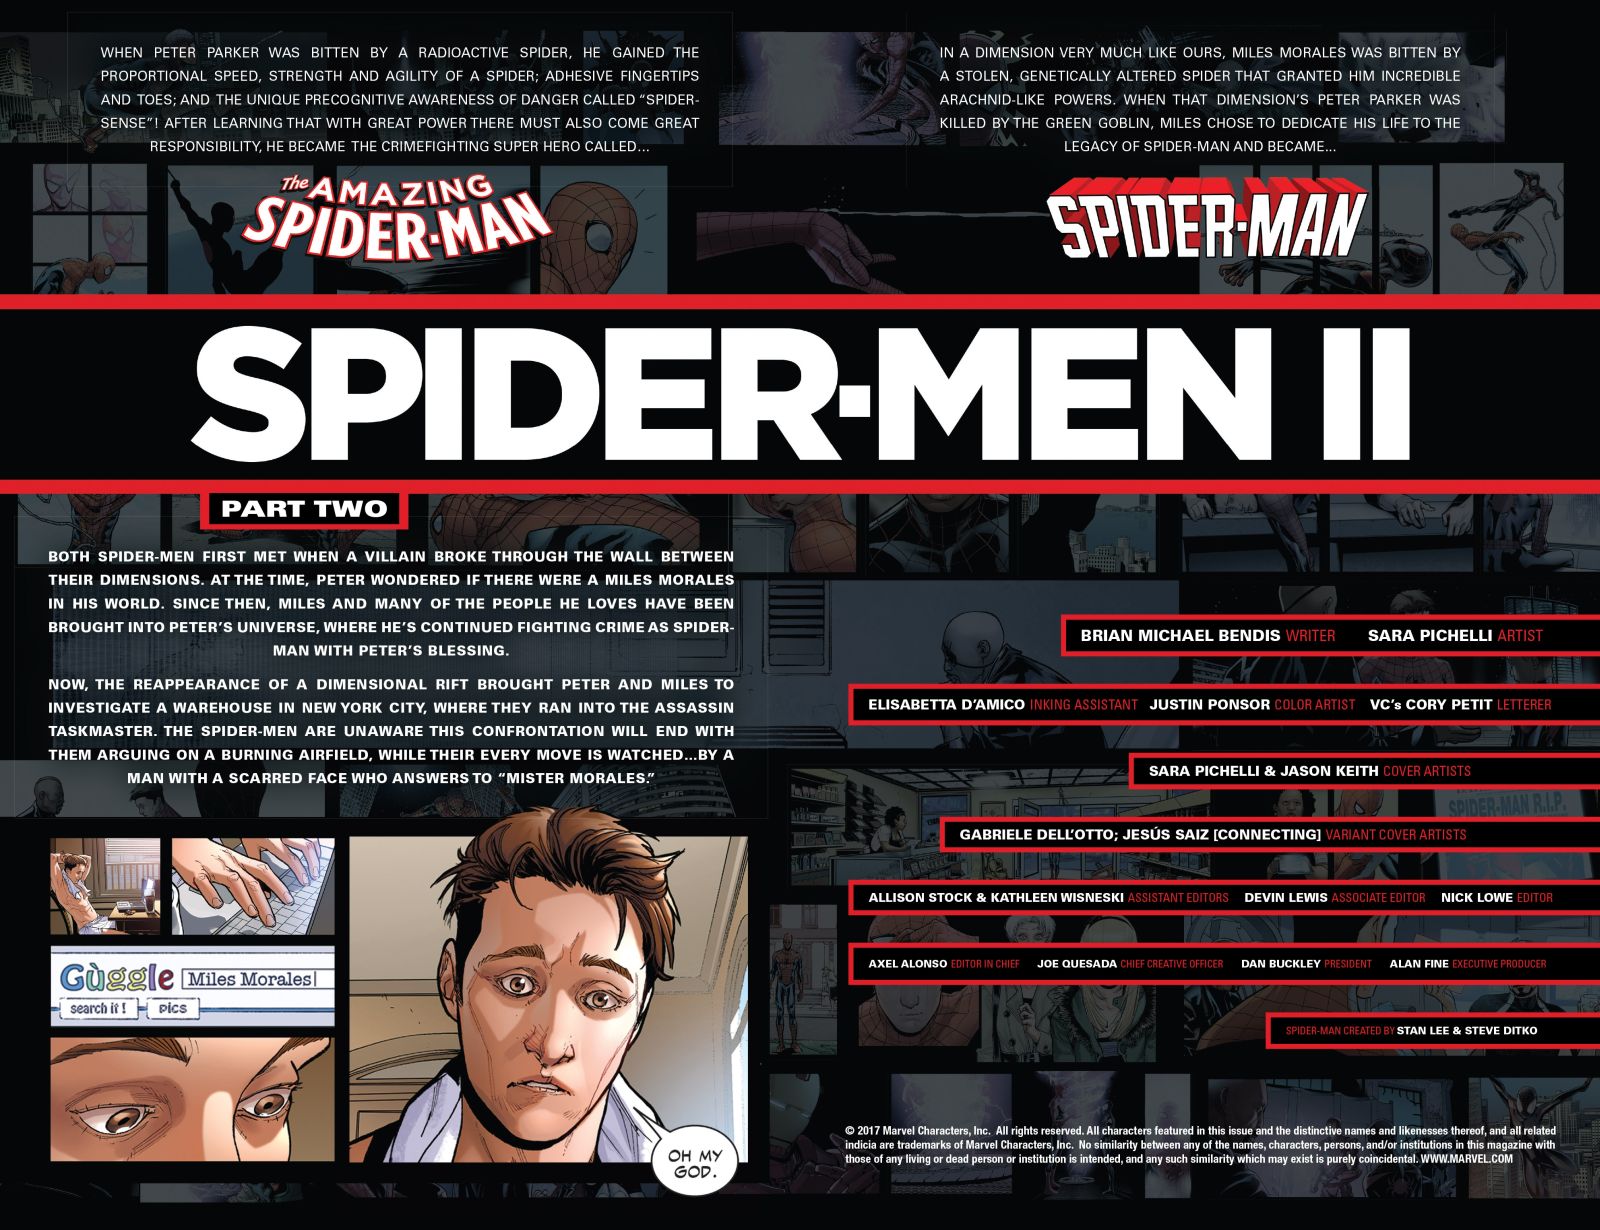 Spider-Men II #2